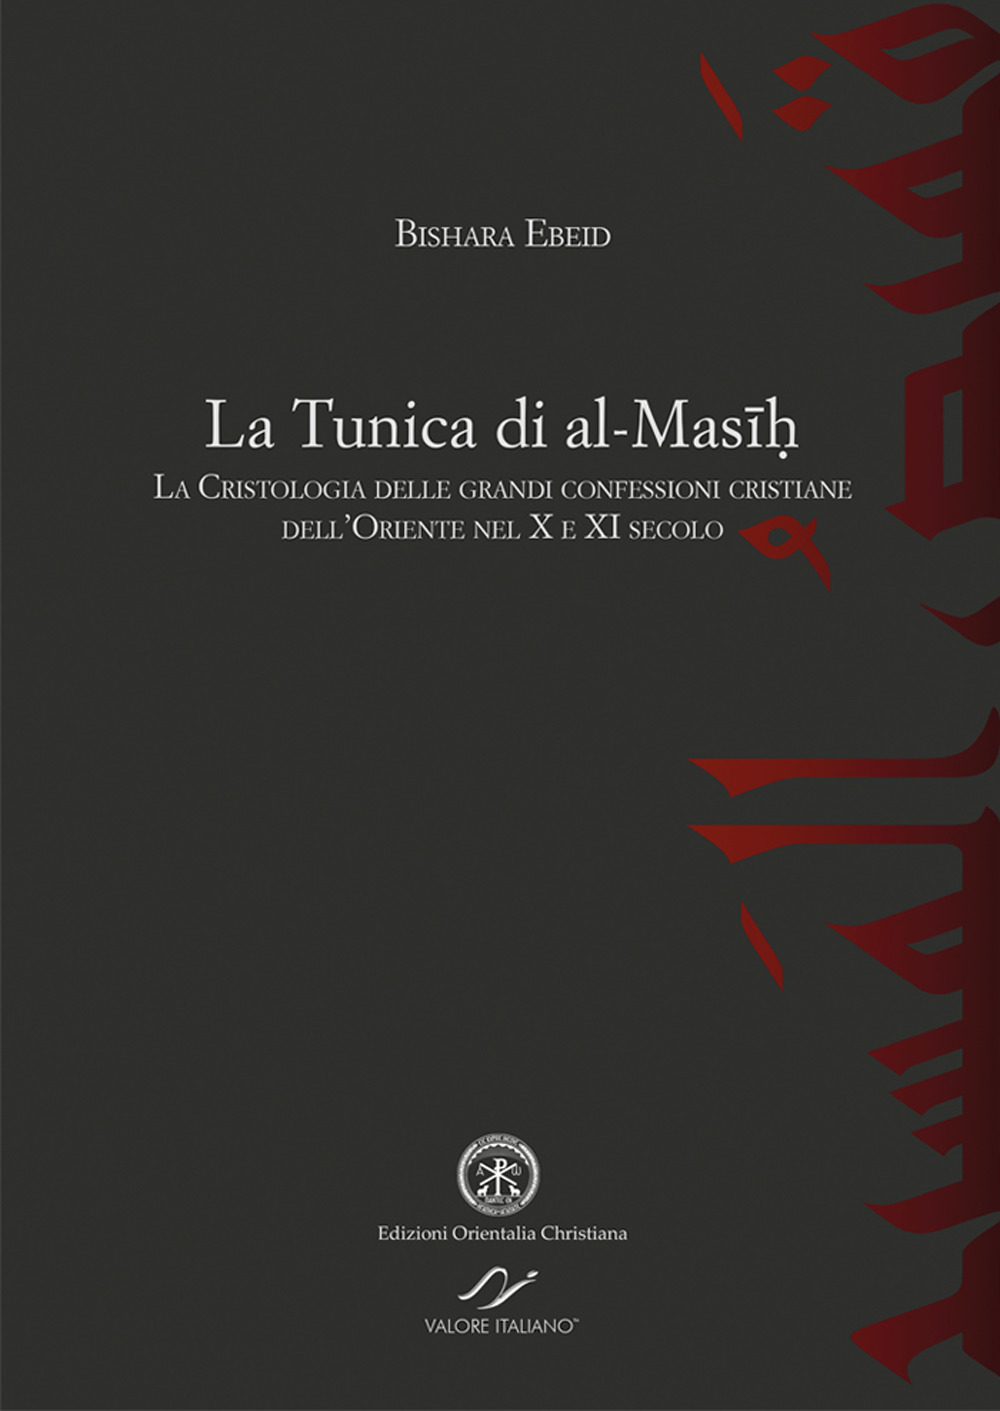 La tunica di al-Masih. La cristologia delle grandi confessioni cristiane dell'Oriente nel X e XI secolo